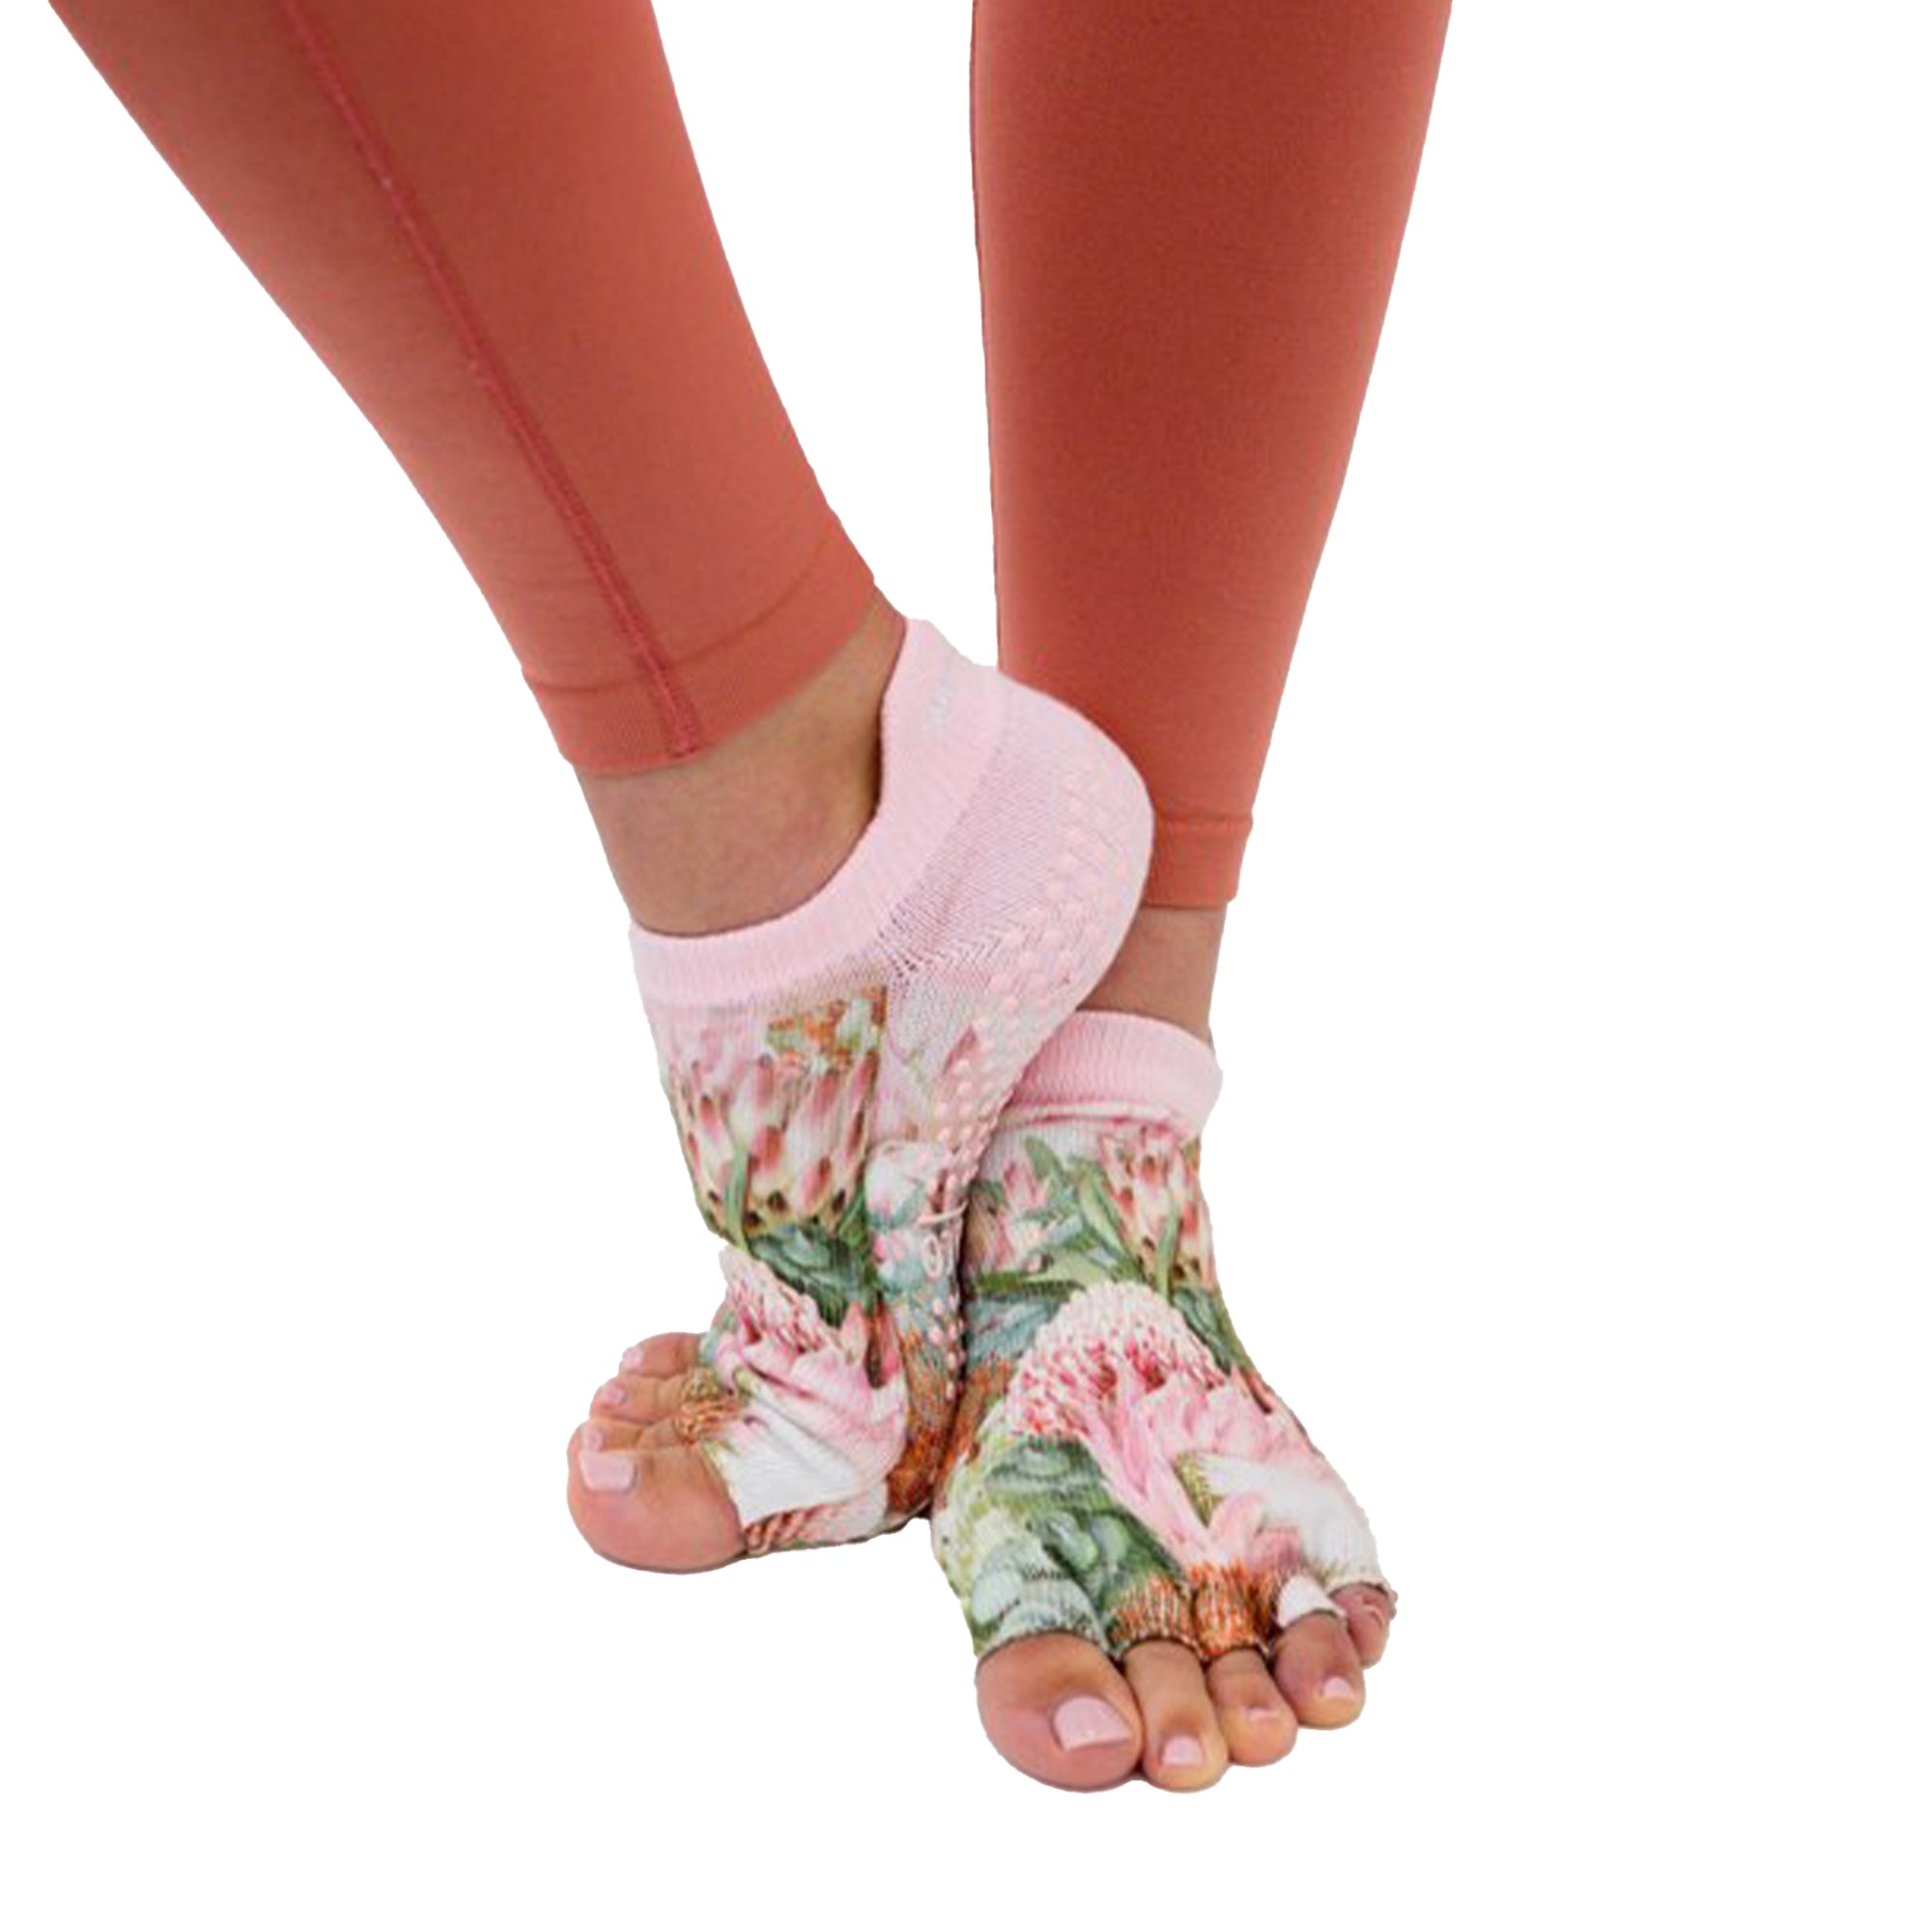 28 Socks ideas  toeless socks, pilates socks, socks